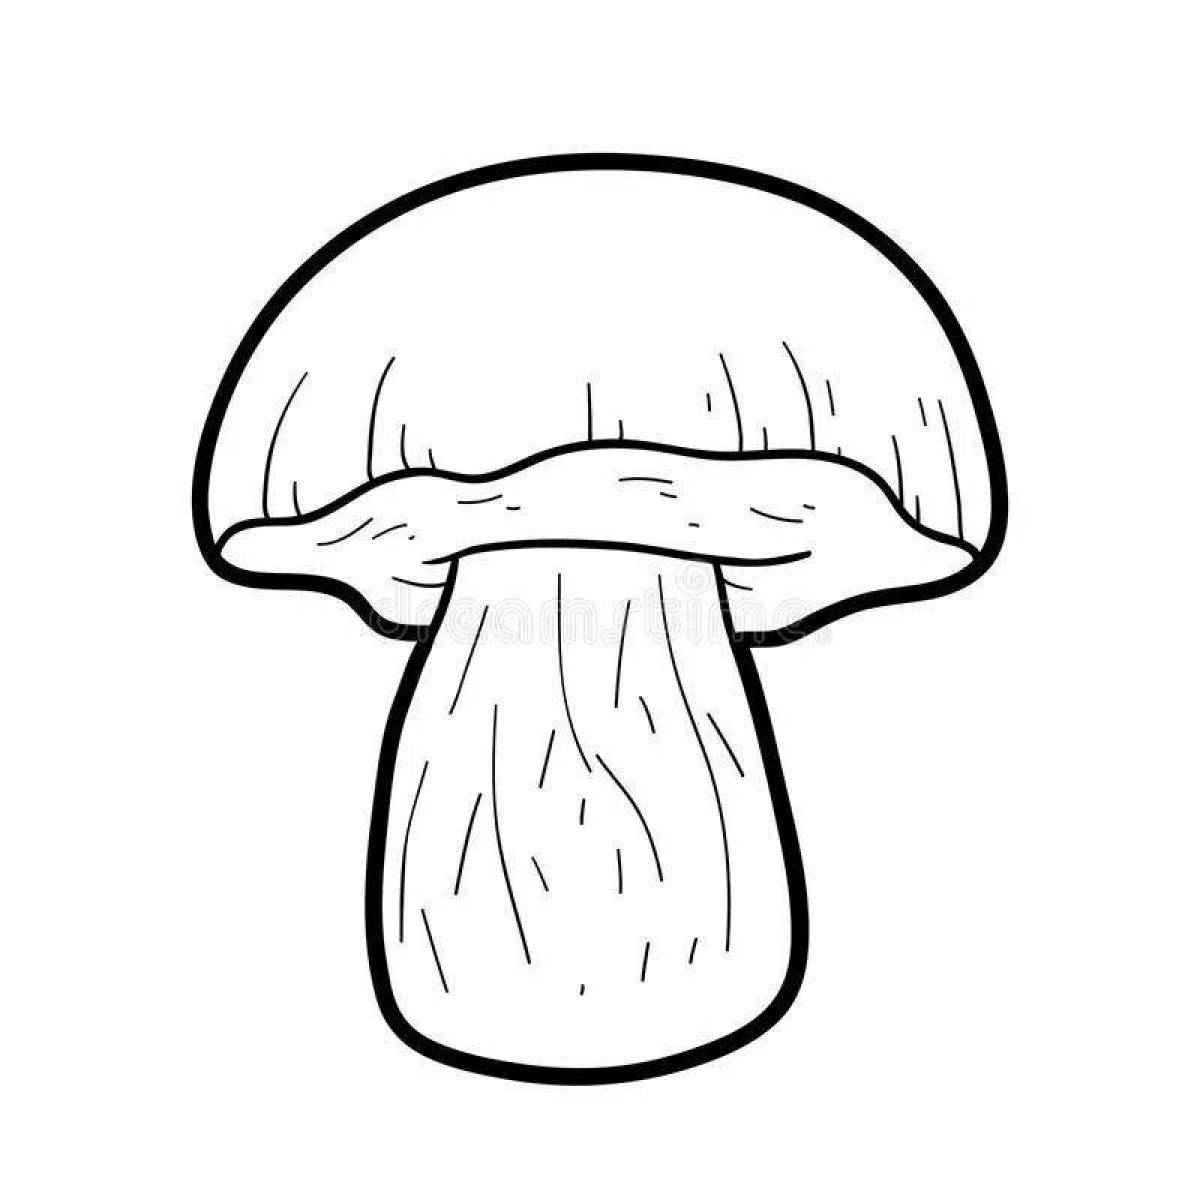 Очаровательная раскраска с белыми грибами